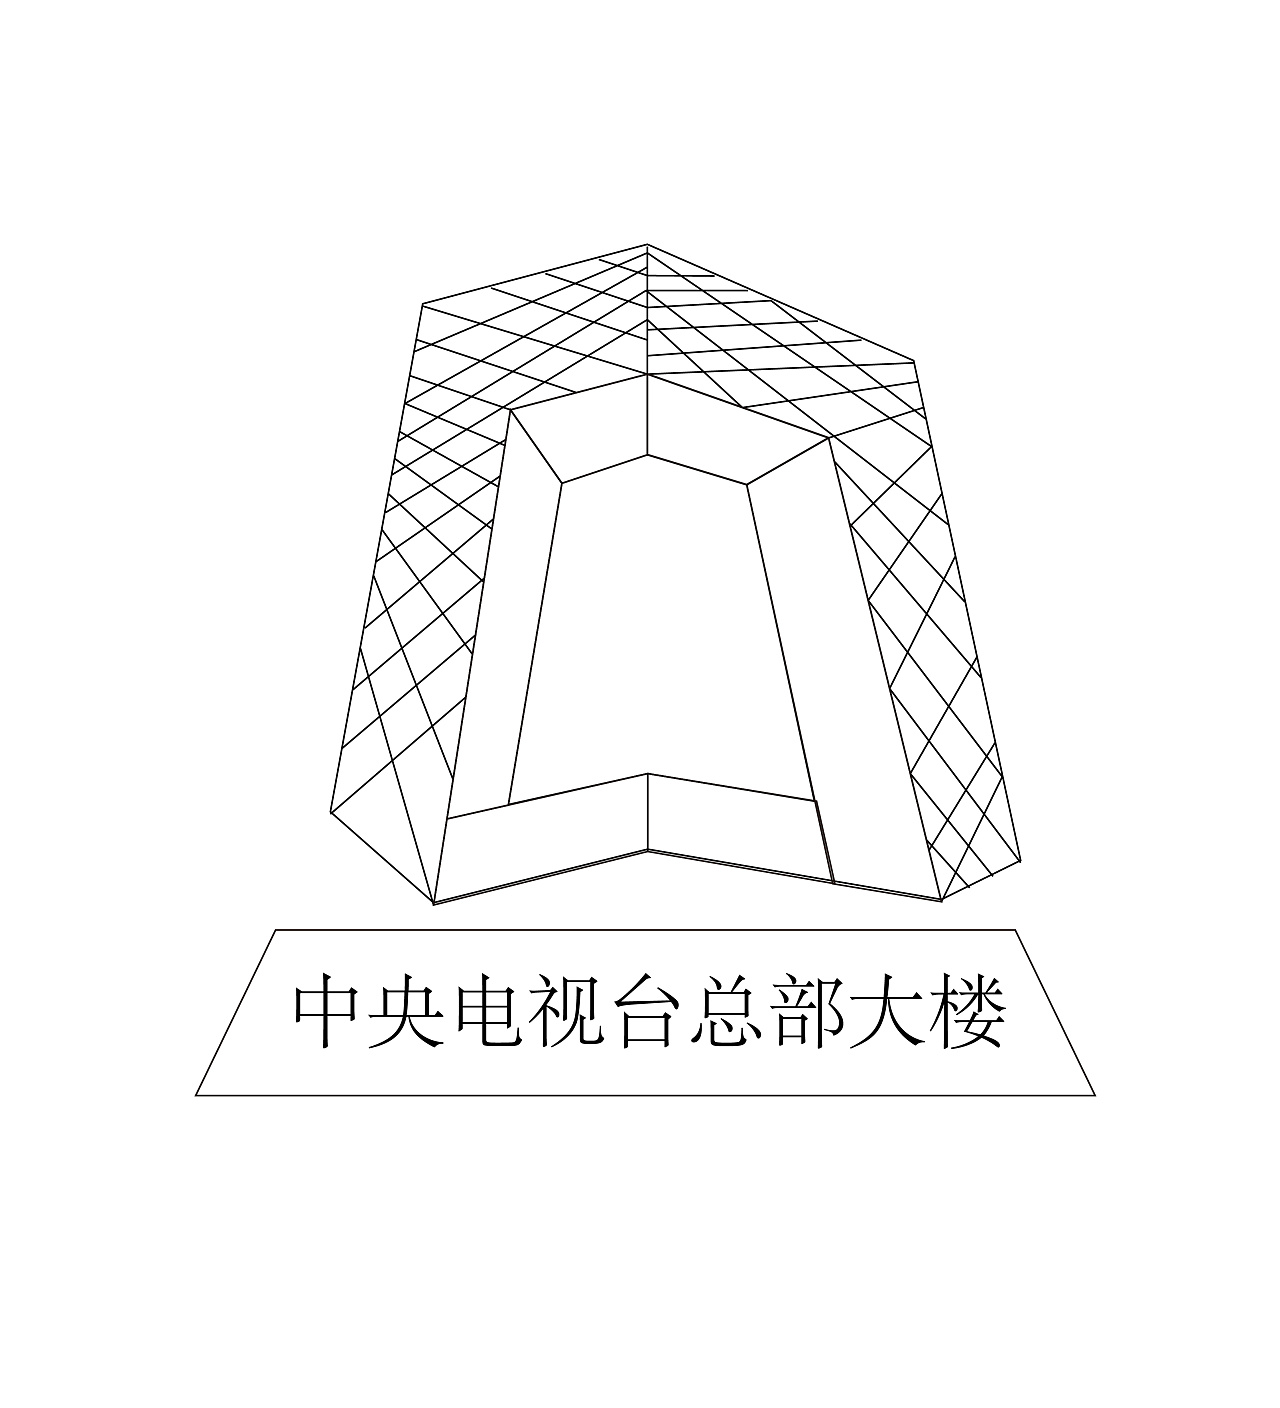 北京电视台建筑简笔画图片